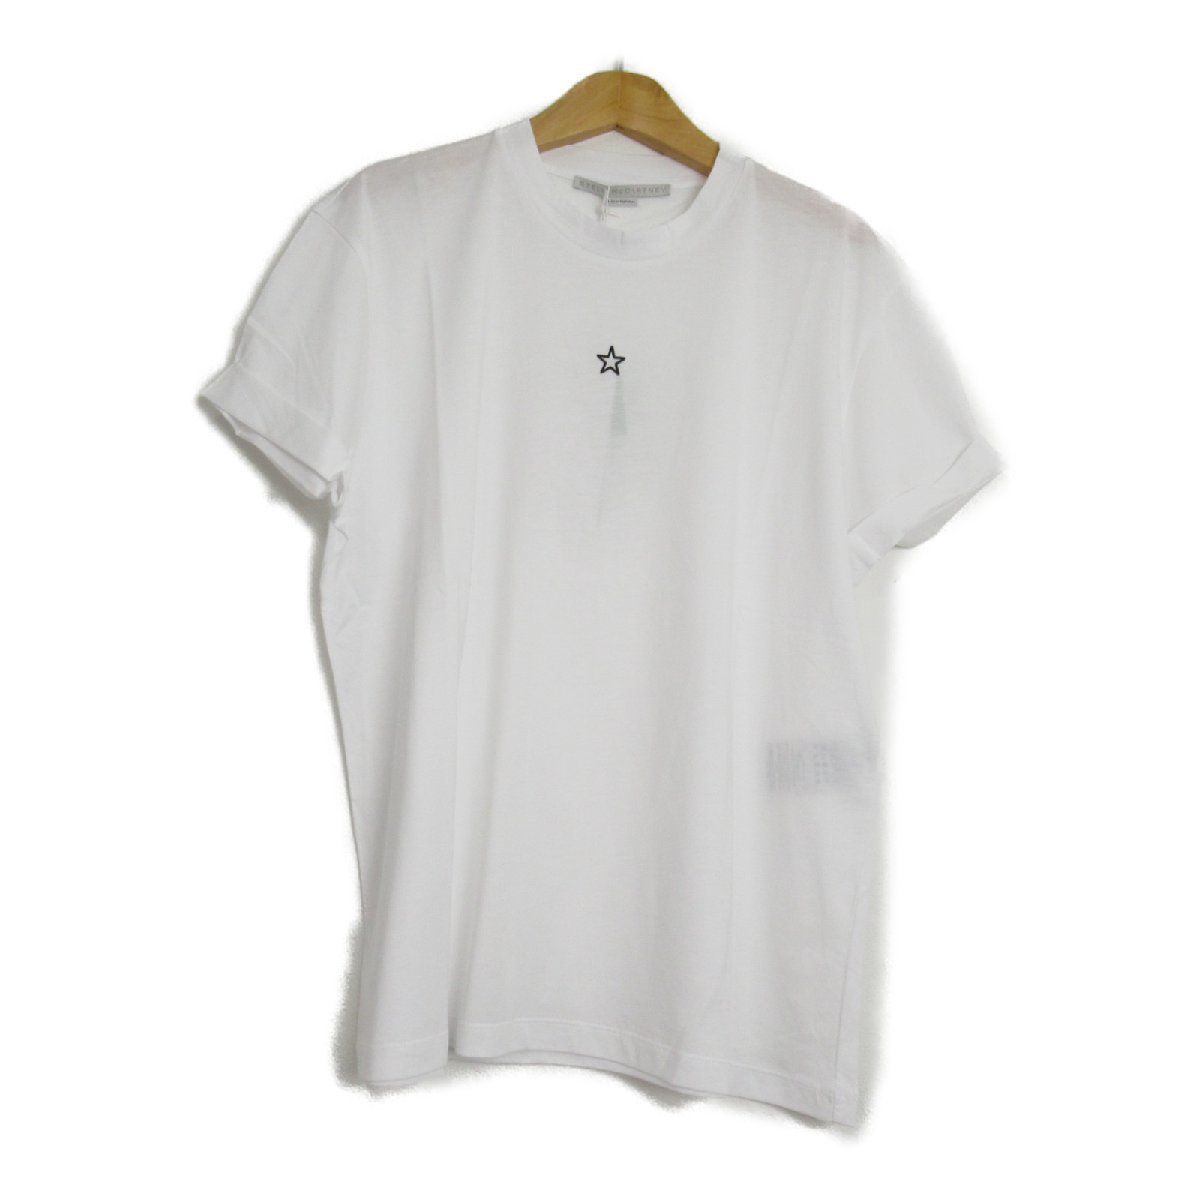 Stella McCartney ステラマッカートニー 半袖Tシャツ Tシャツ ホワイト系 コットン レディース